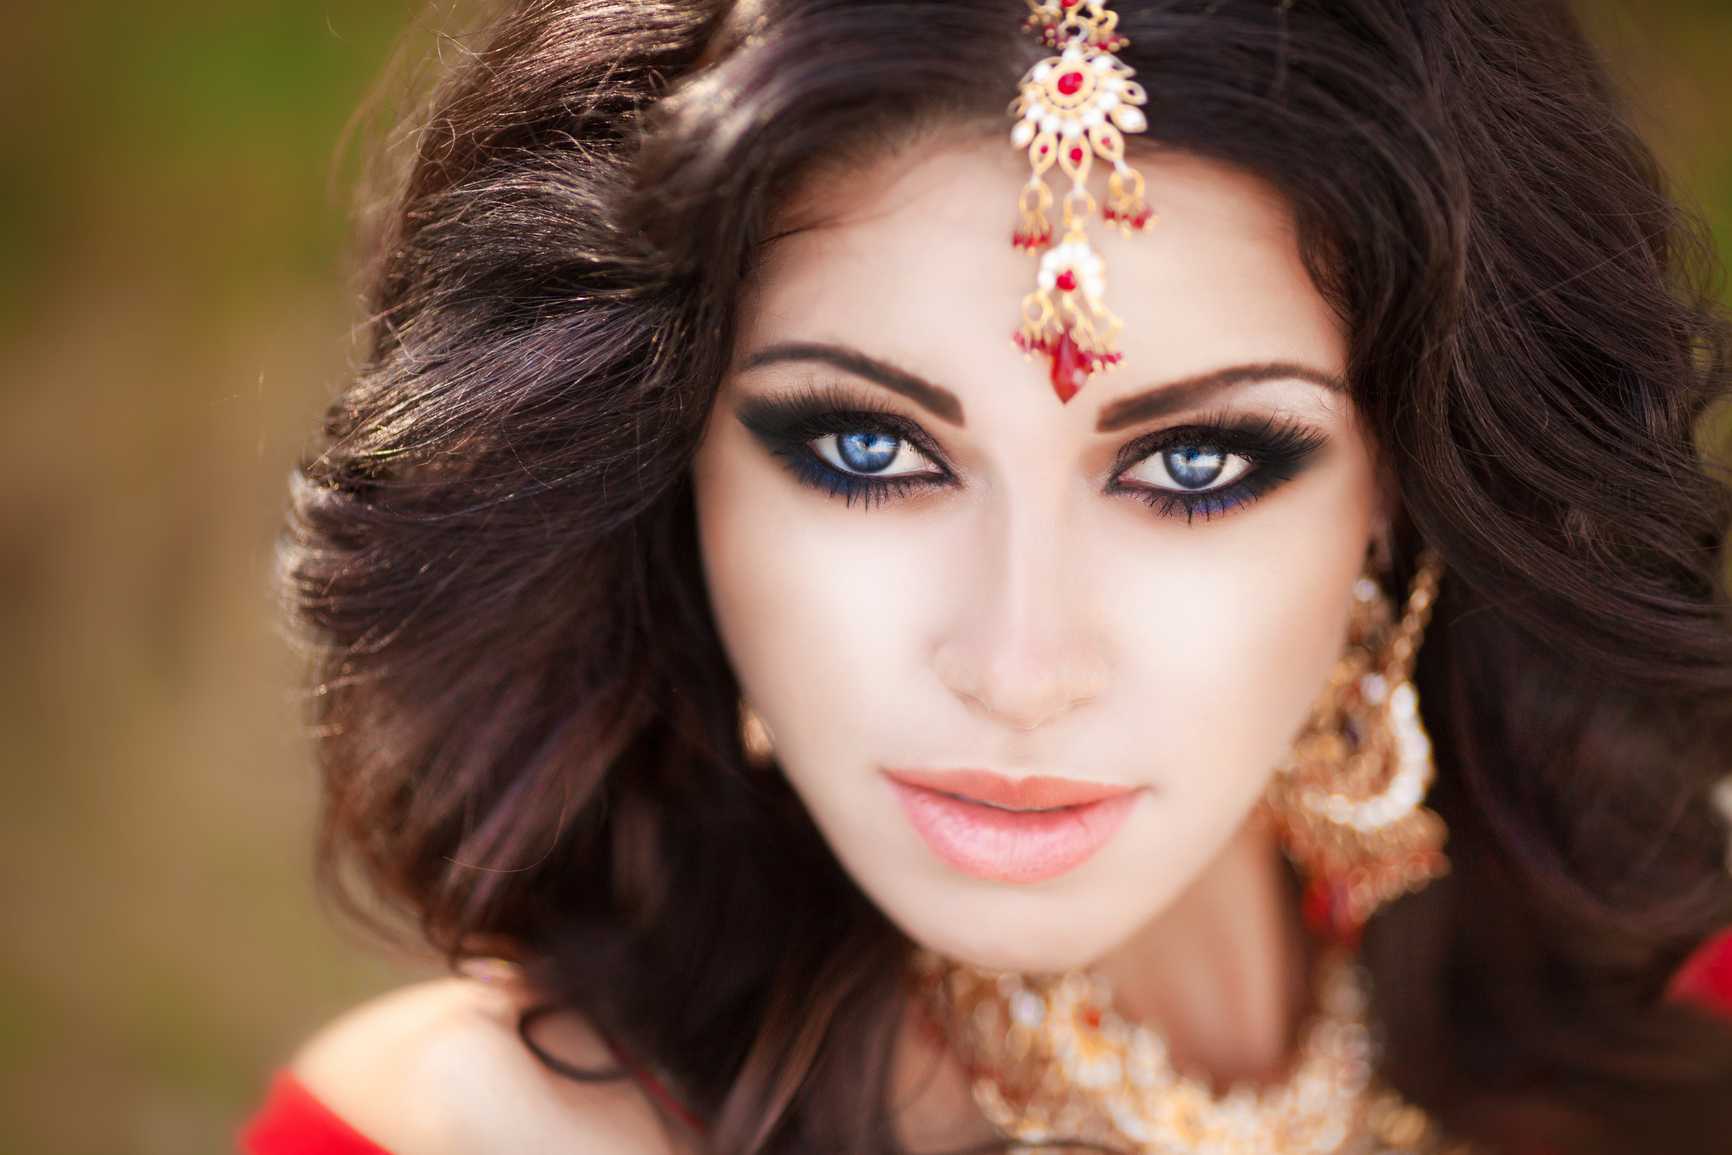 Арабский макияж- пошаговая техника нанесения » womanmirror
арабский макияж- пошаговая техника нанесения